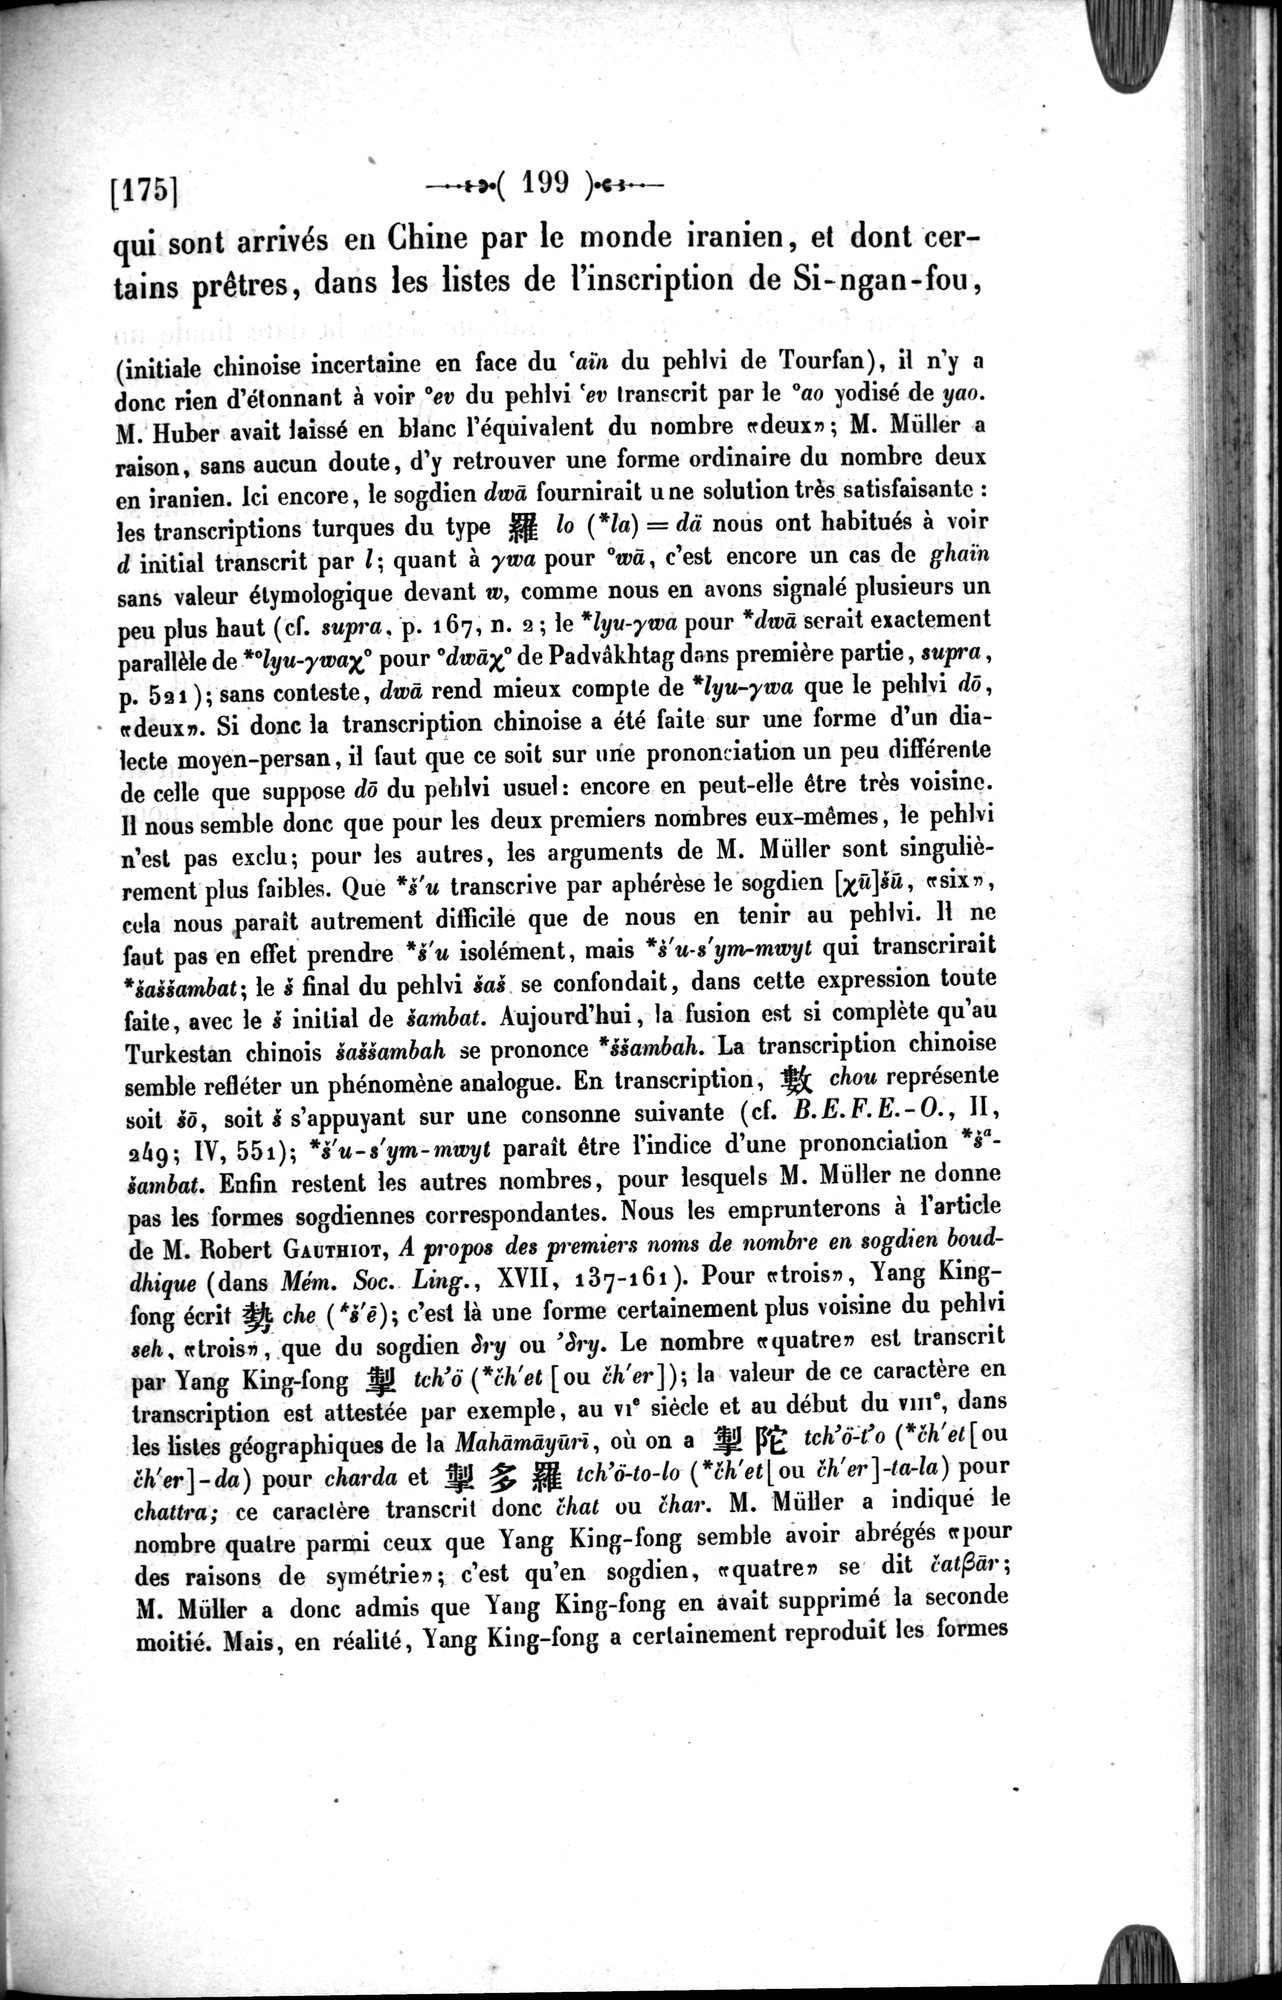 Un traité manichéen retrouvé en Chine : vol.1 / Page 209 (Grayscale High Resolution Image)